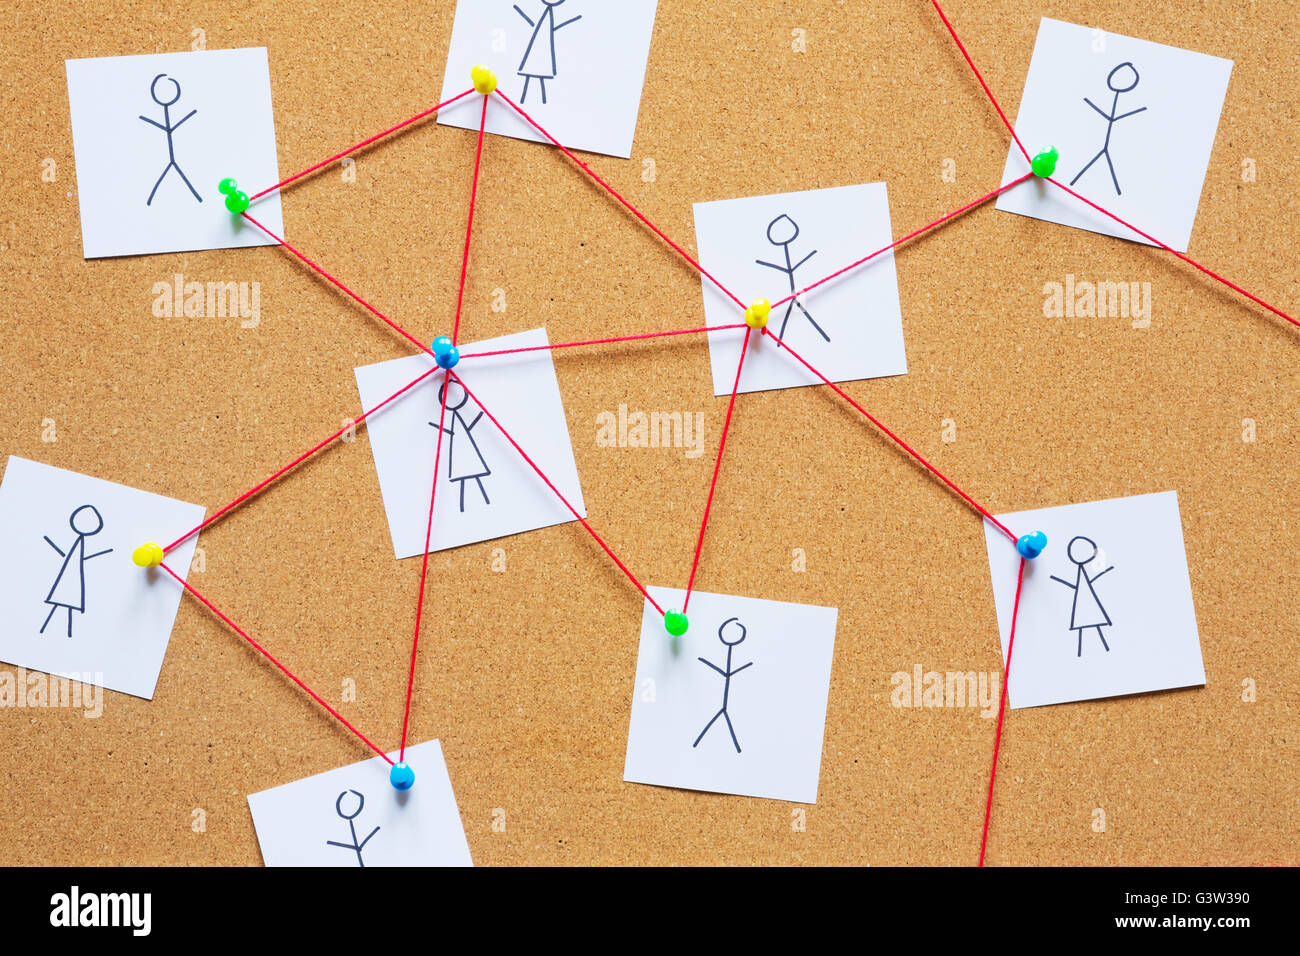 Visualisierung eines sozialen Netzwerks auf einer Kork-Pinnwand. Stockfoto